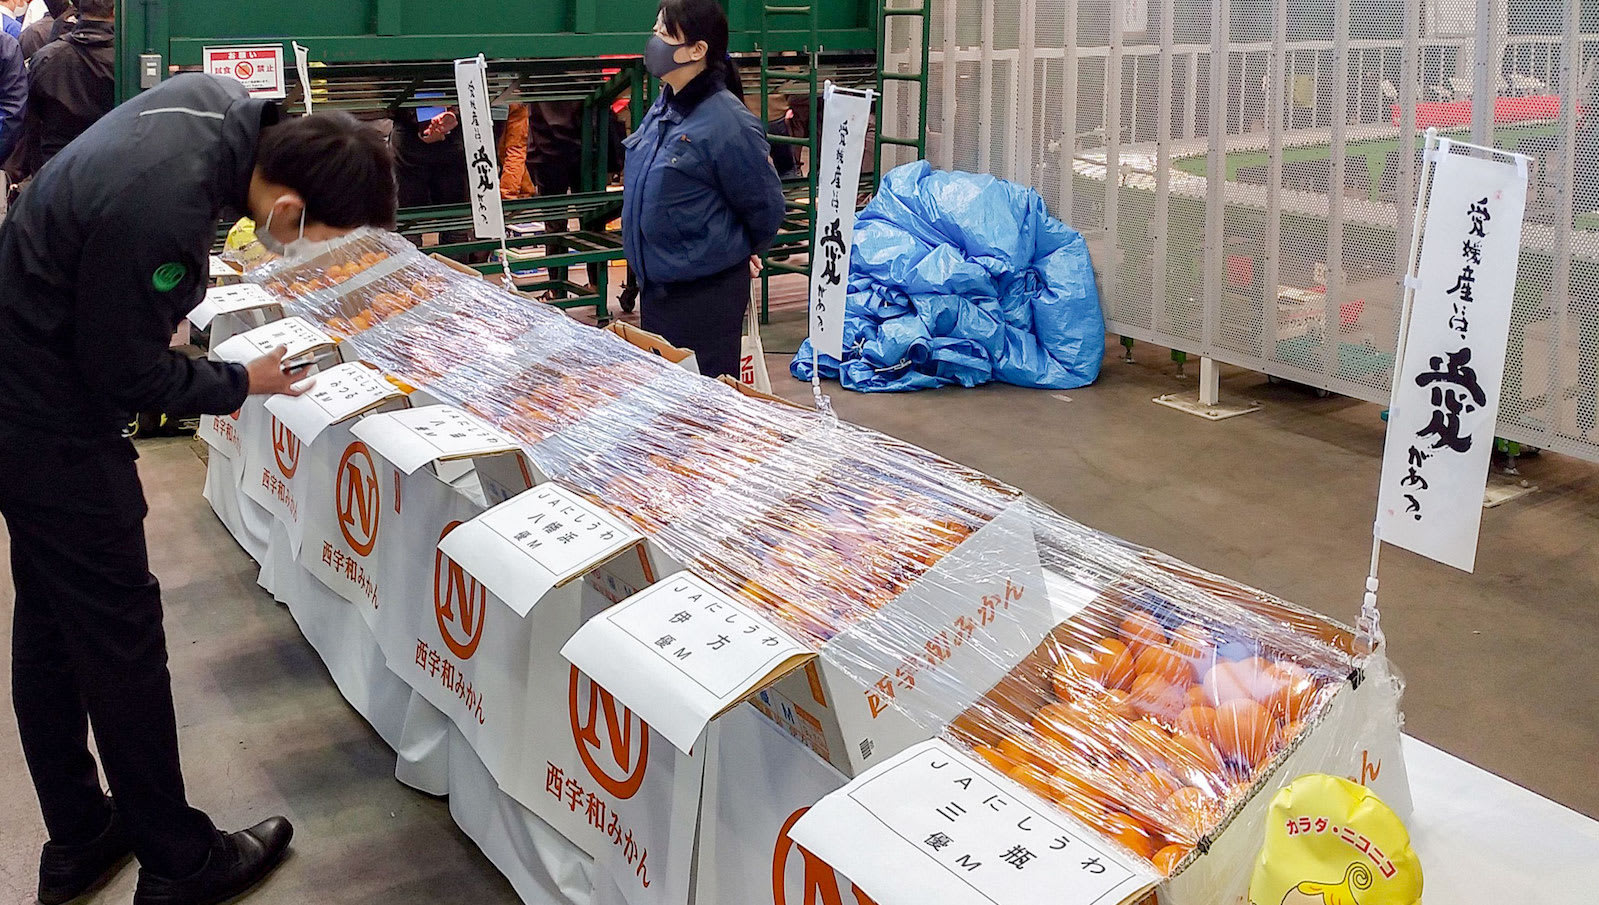 صندوق برتقال يباع بحوالي 10 آلاف دولار في اليابان